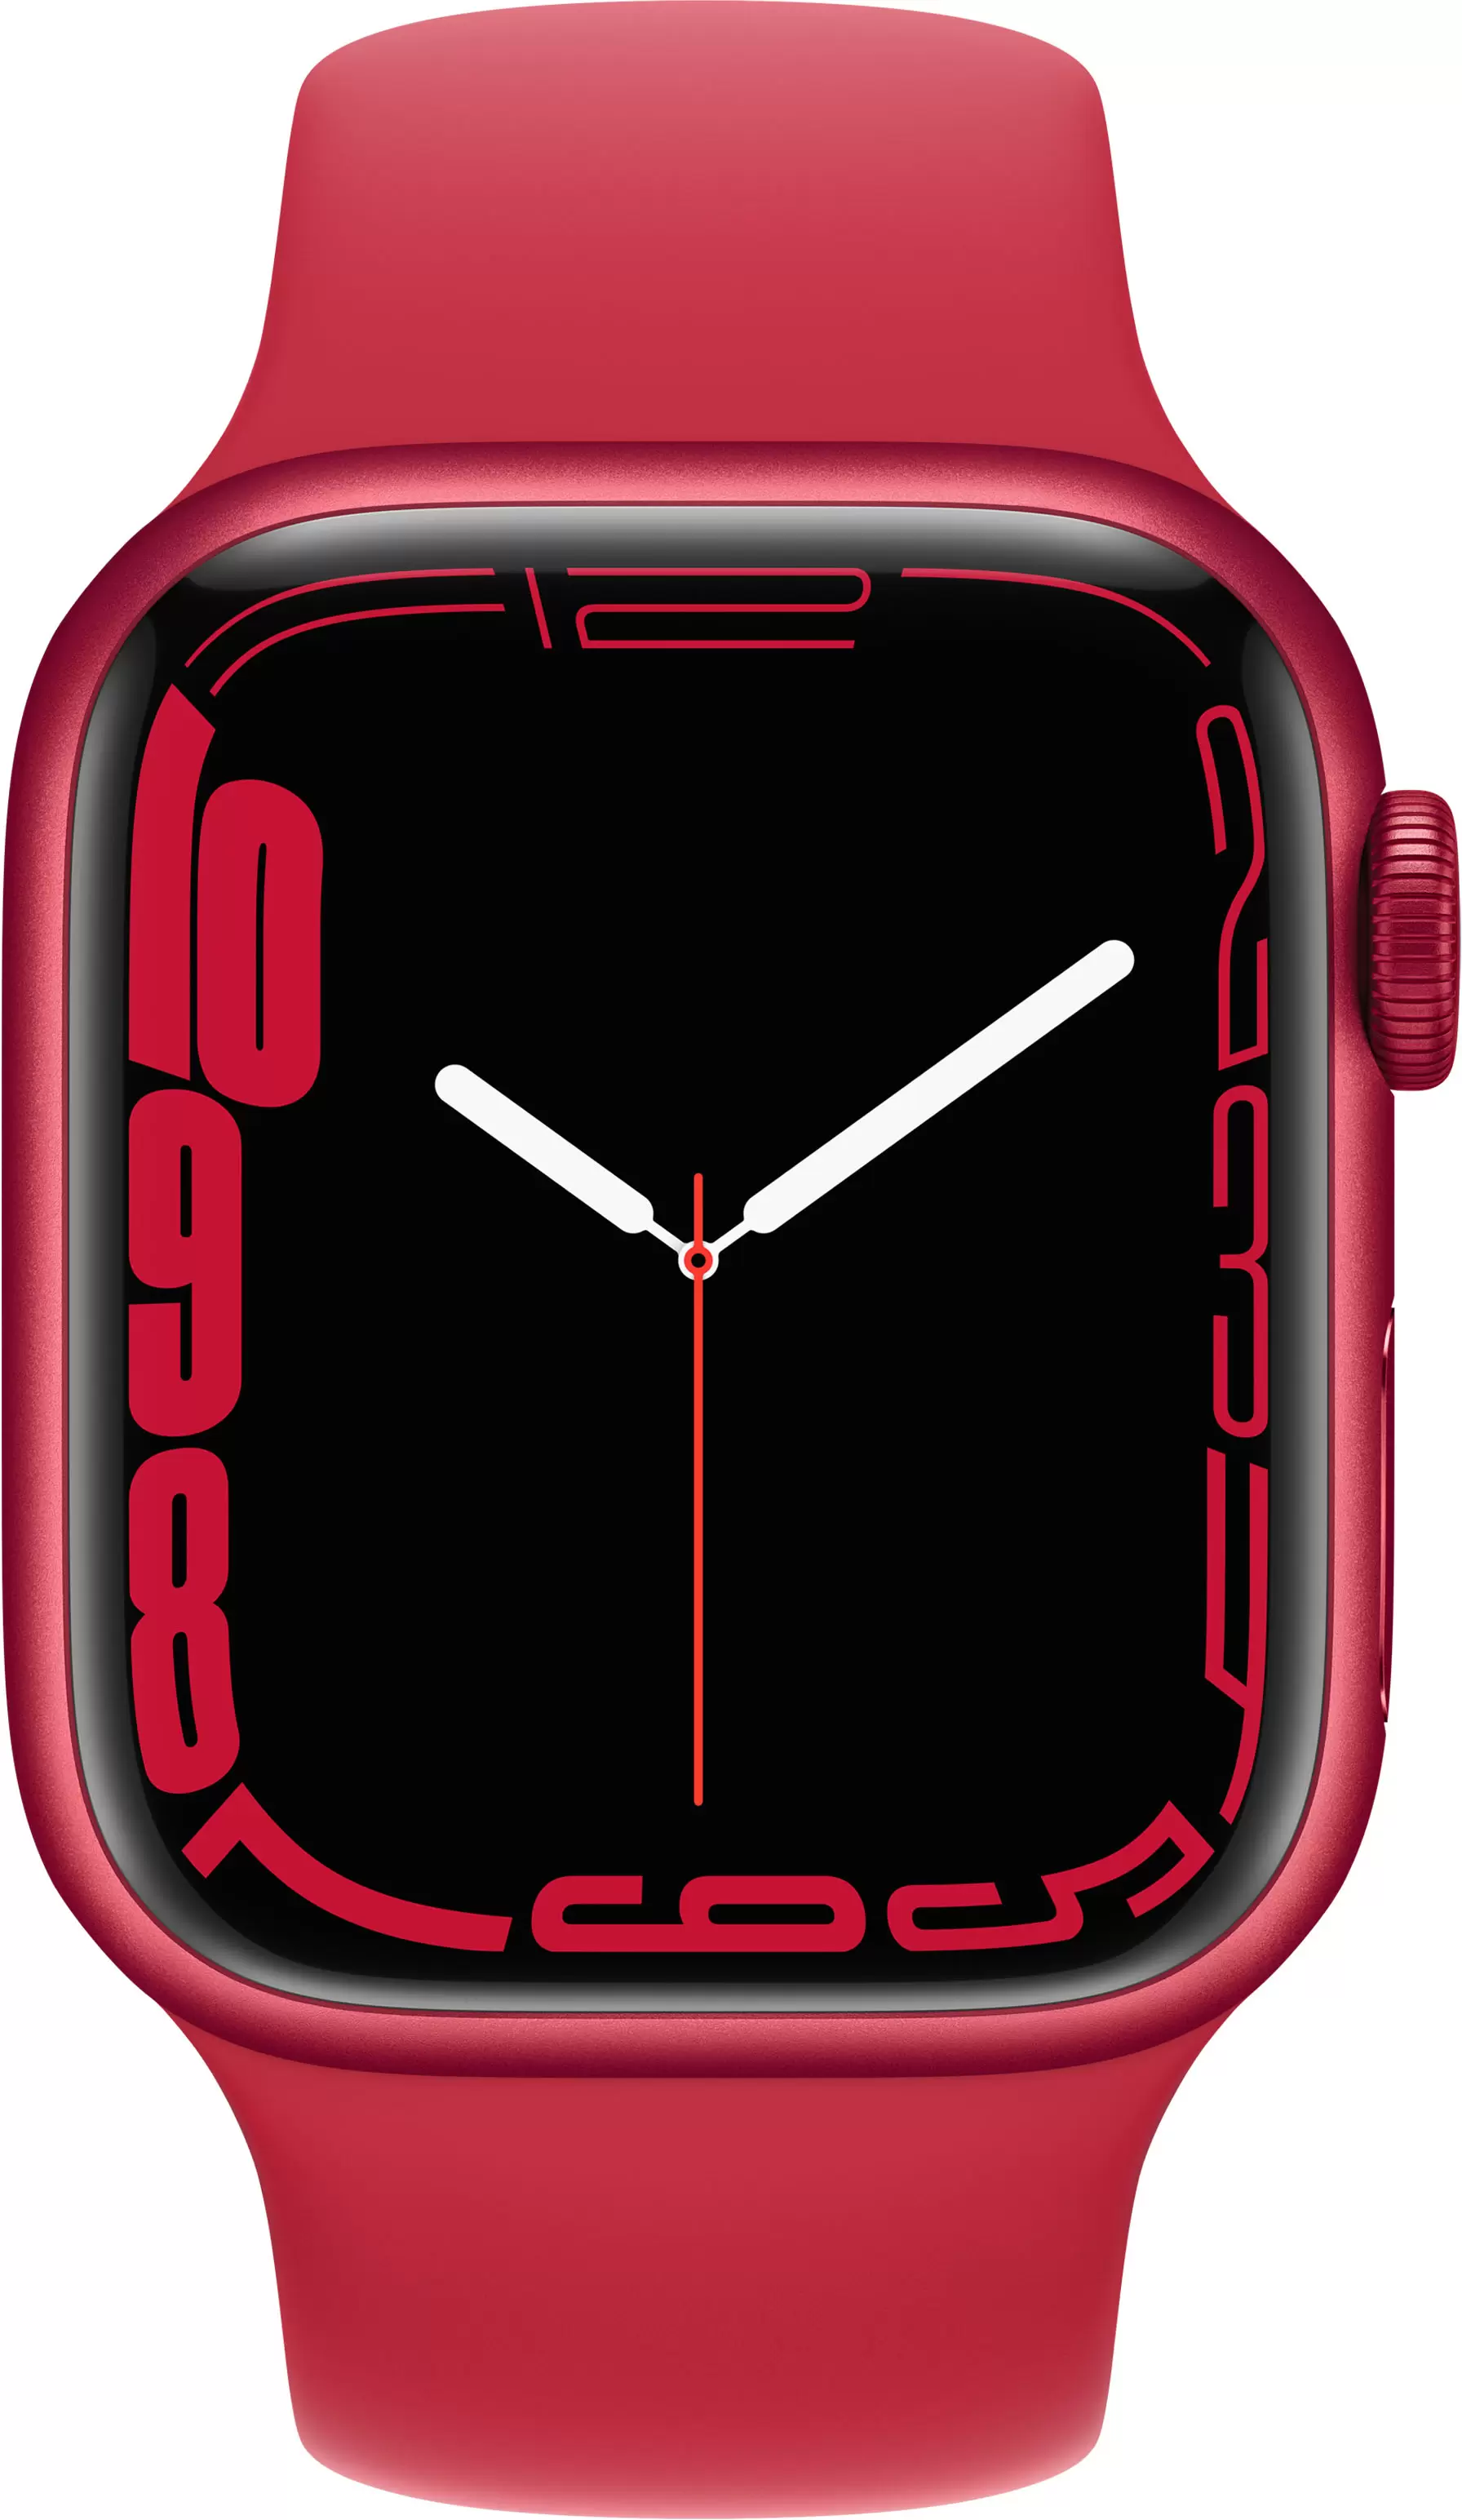 Apple Watch Series 7, 41 мм, корпус из алюминия красного цвета, спортивный ремешок красного цвета